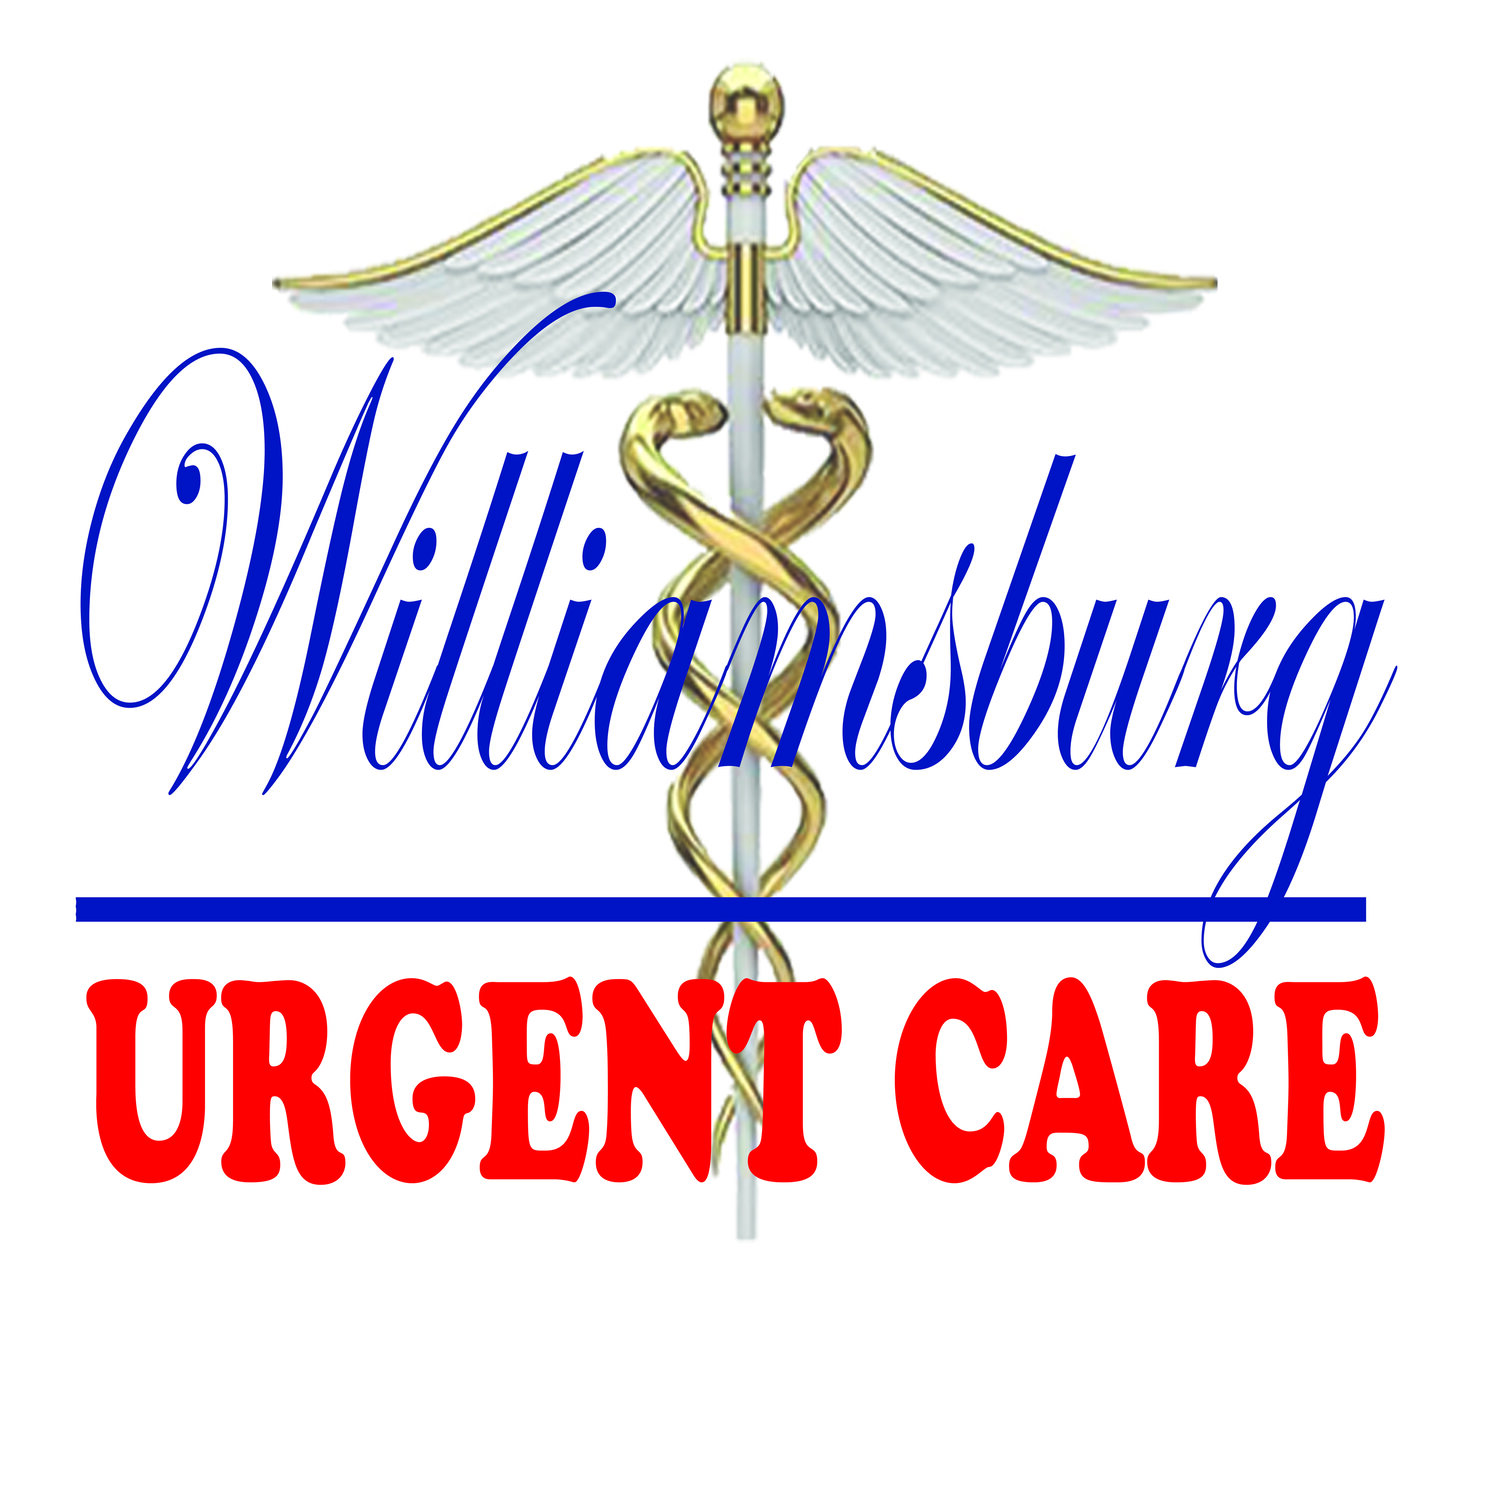 Williamsburg Urgent Care